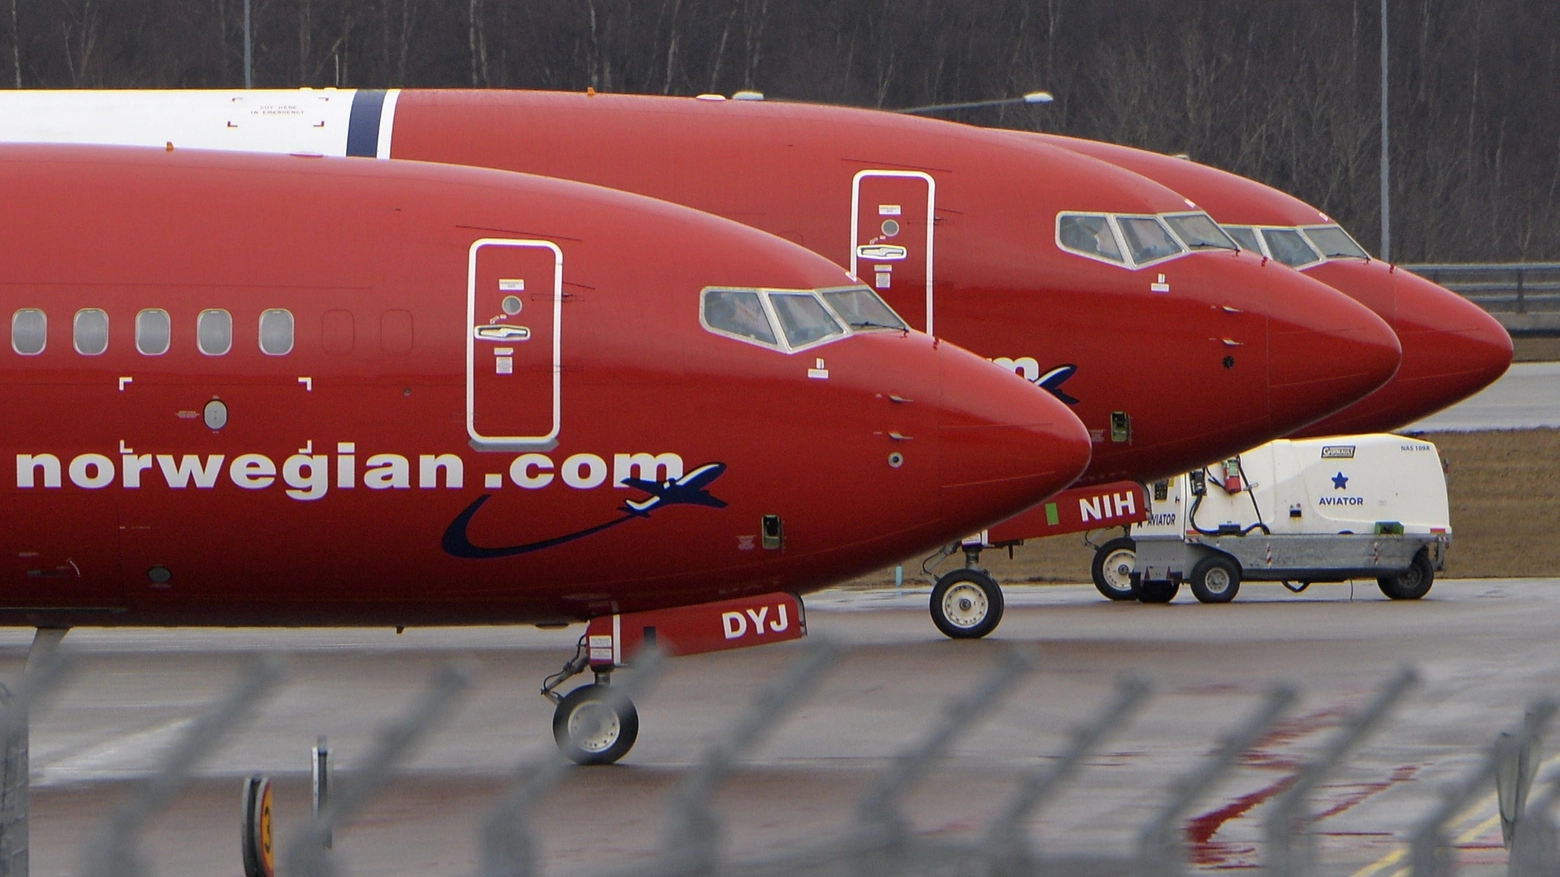 Boeing 737-800 della Norwegian Air Shuttle, pronta a low cost verso gli Usa (Afp)